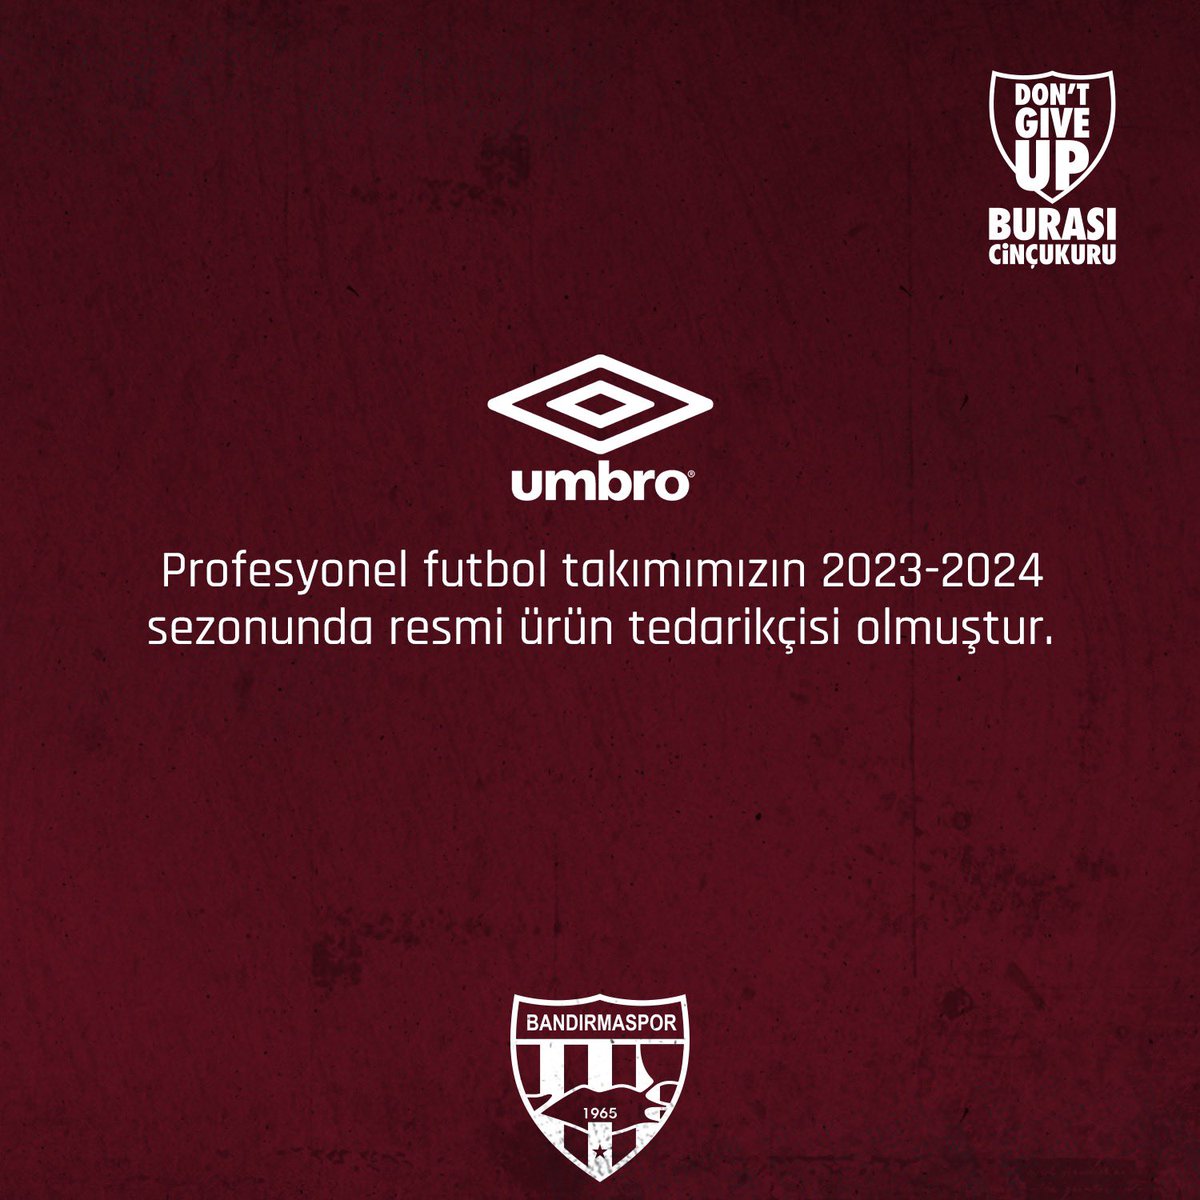 Profesyonel futbol takımımızın 2023-2024 sezonunda resmi ürün tedarikçisi @umbro olmuştur. 

#GüçlüTakım
#BandırmaOlmuşHayatımız